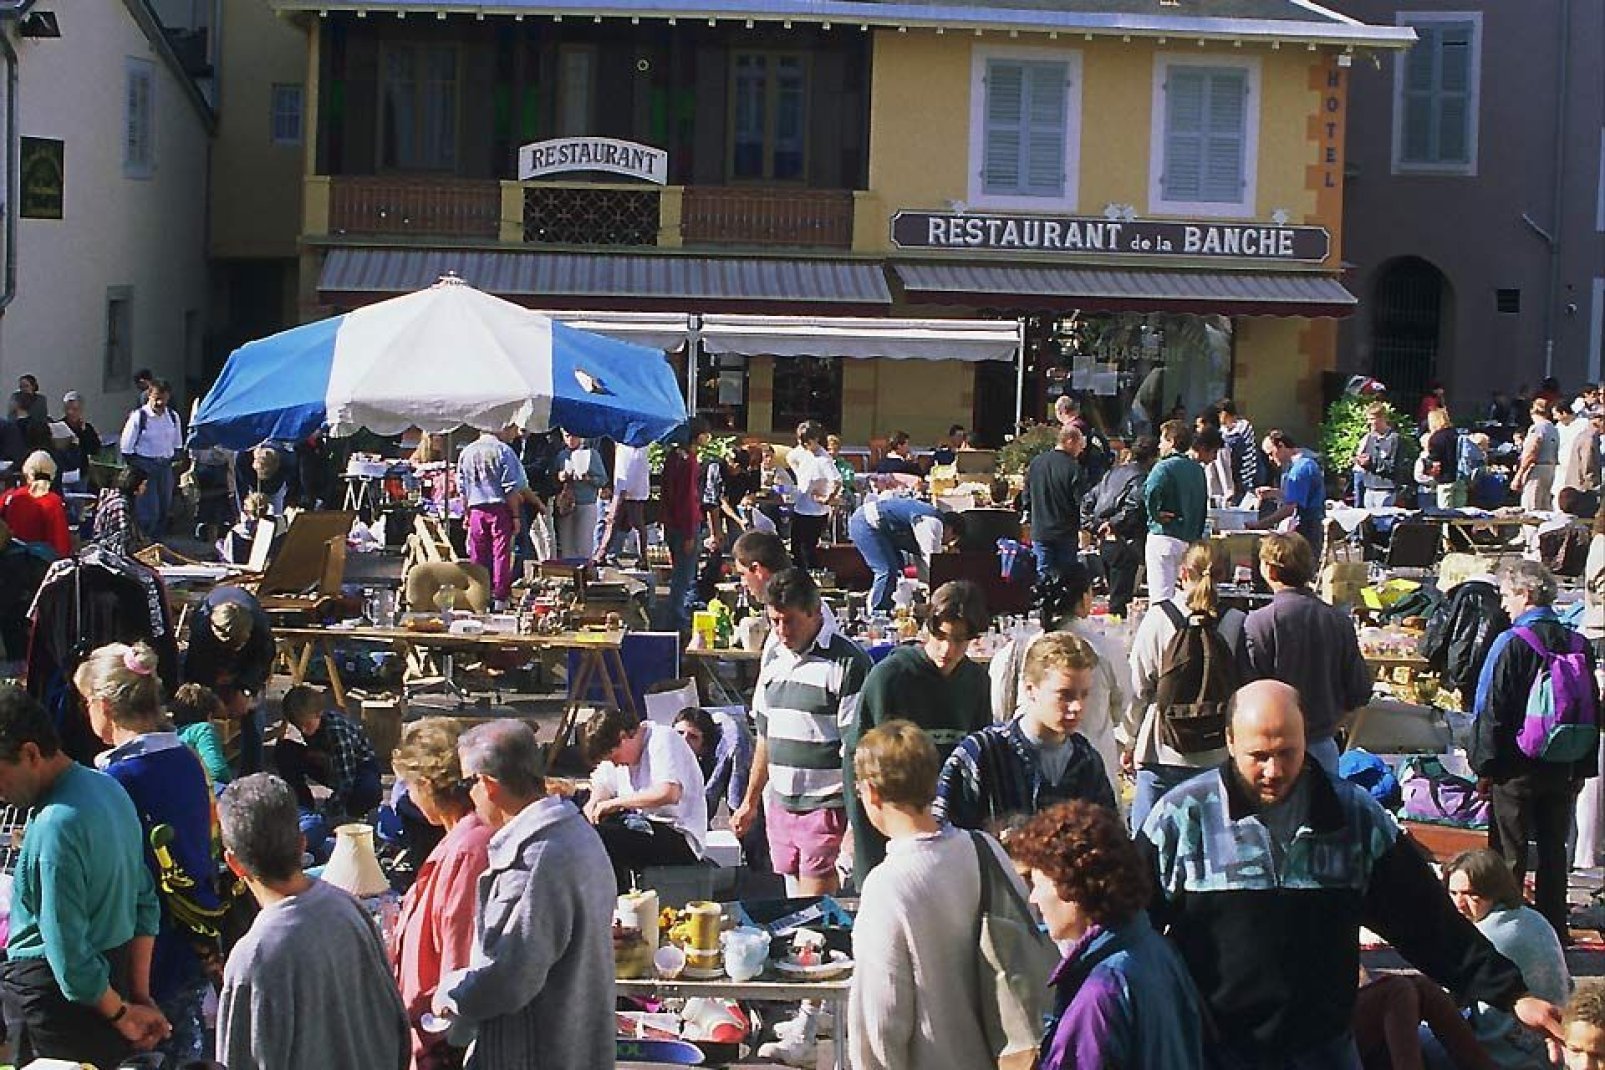 La ciudad de Chambéry acoge muchas celebraciones como los mercadillos, especialmente durante el período estival.